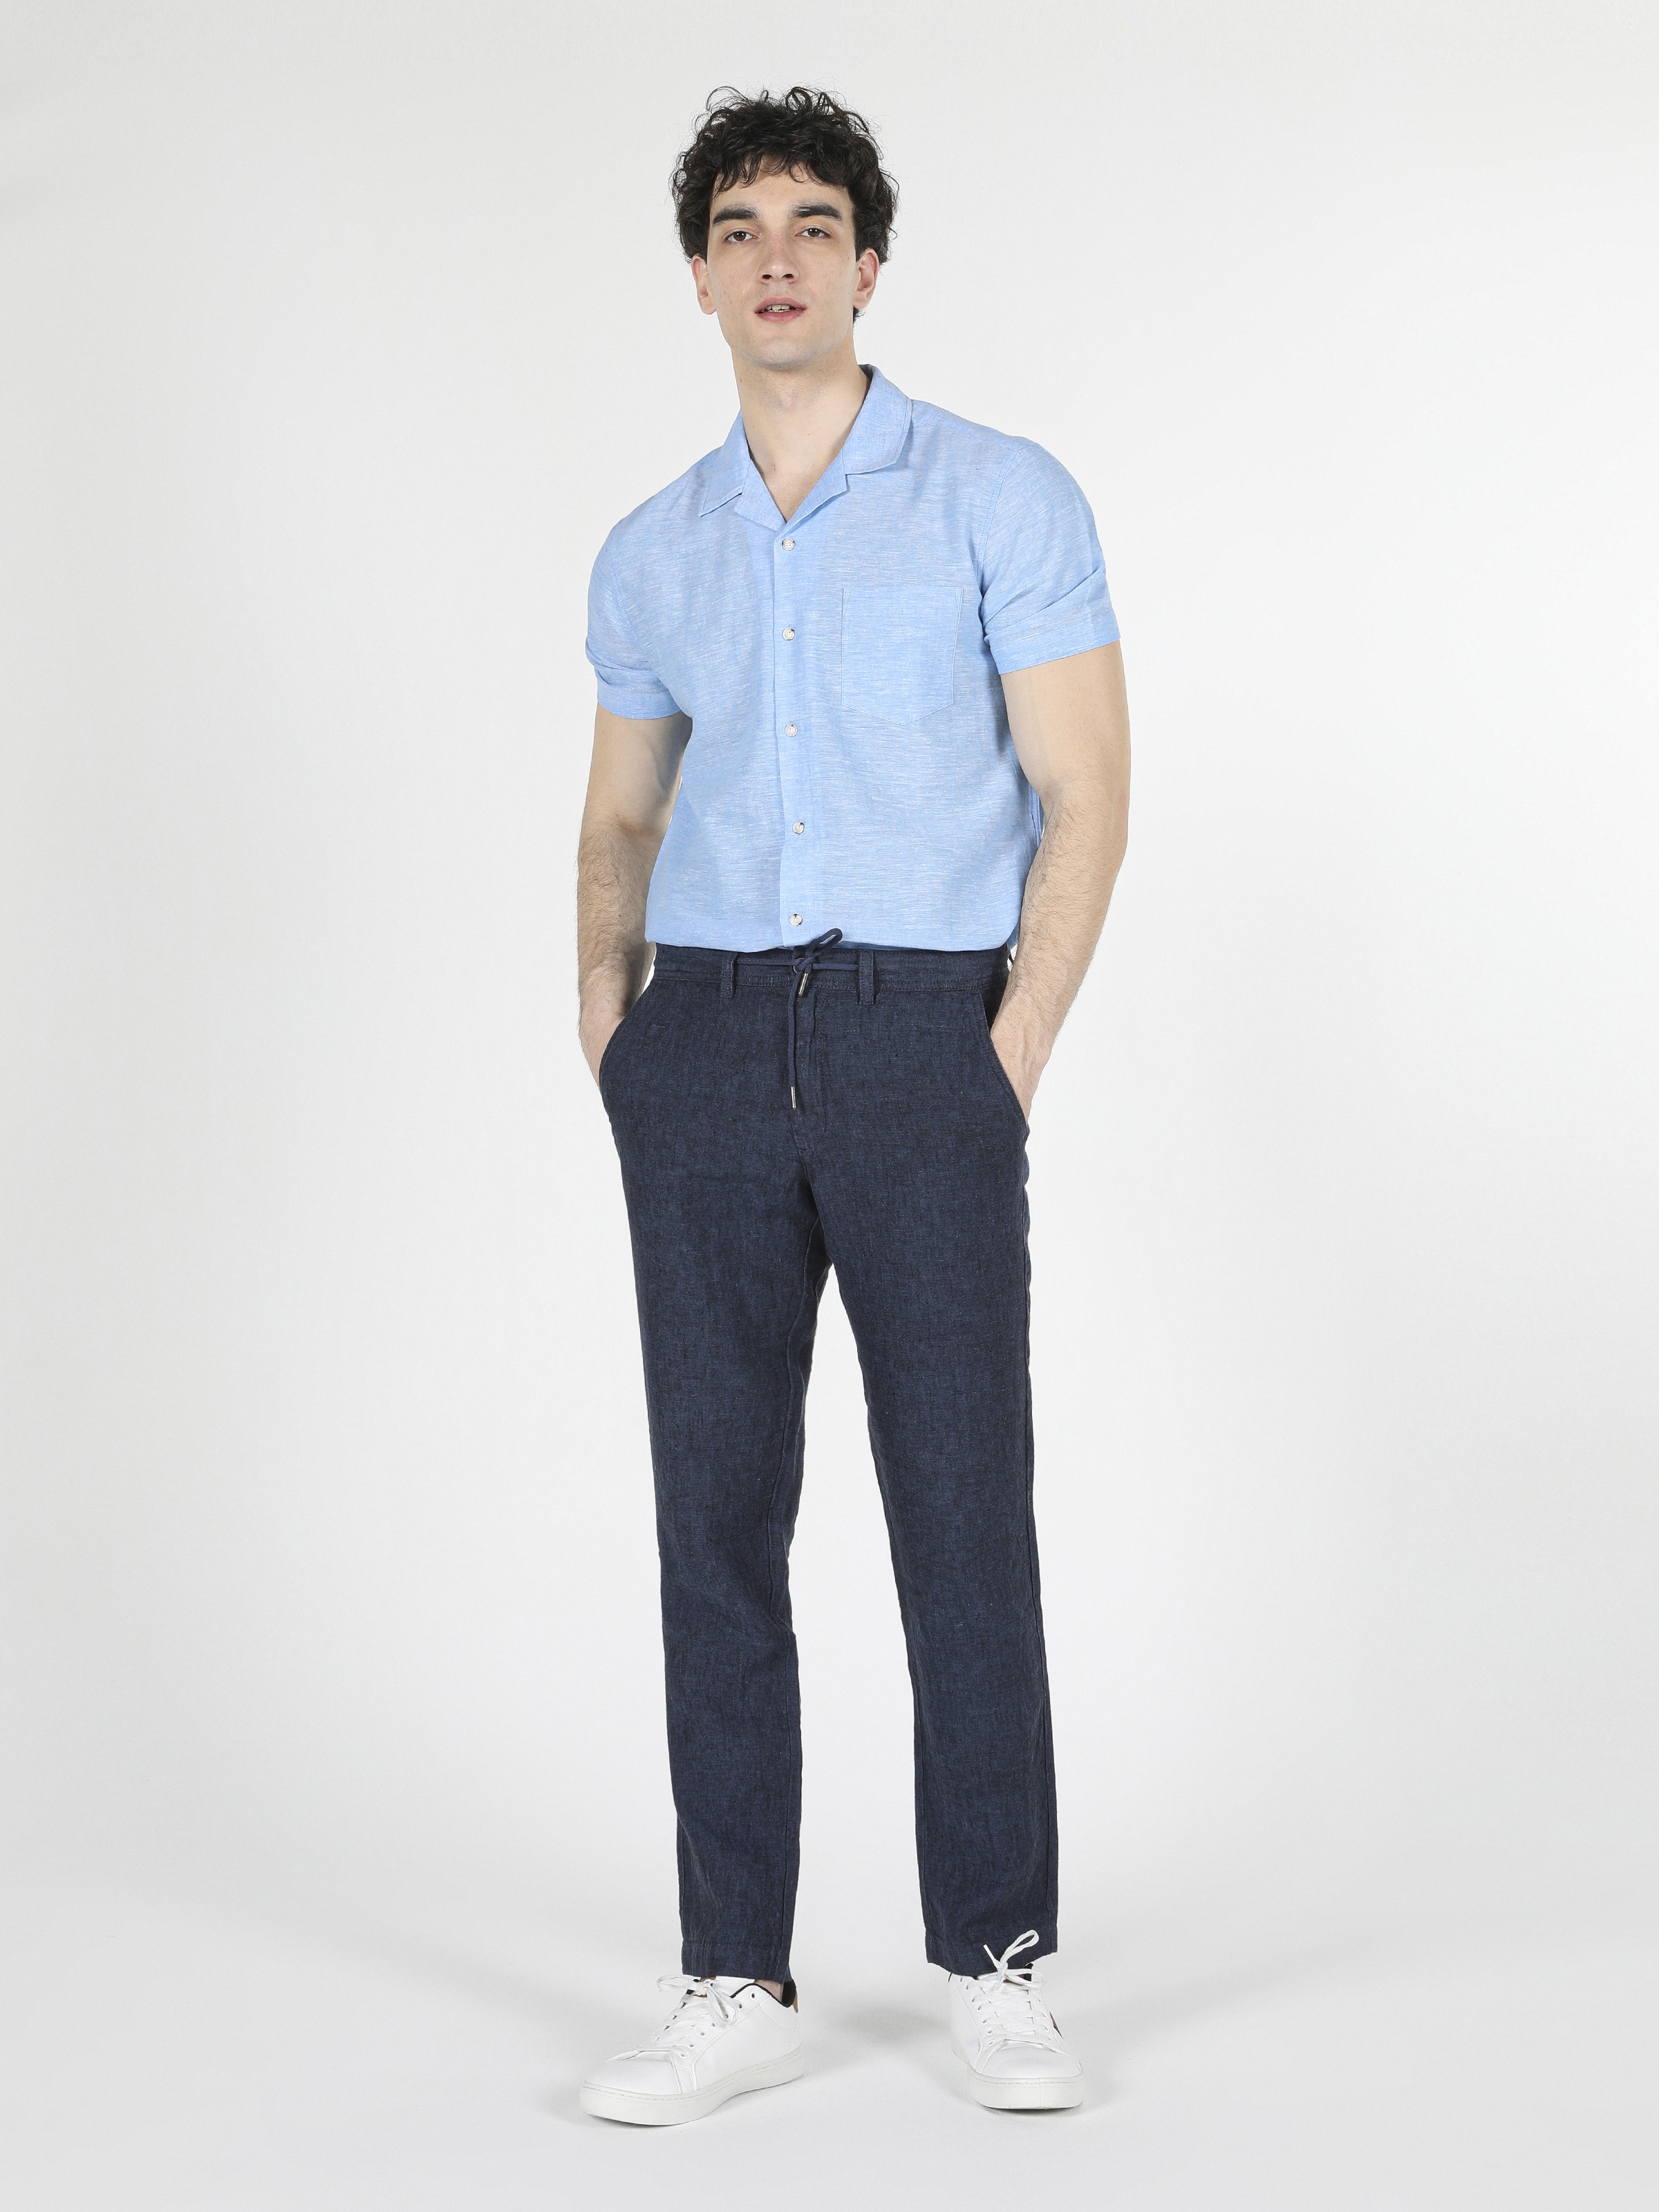 Afficher les détails de Pantalon Homme Bleu Marine Taille Moyenne Coupe Regular Jambe Droite